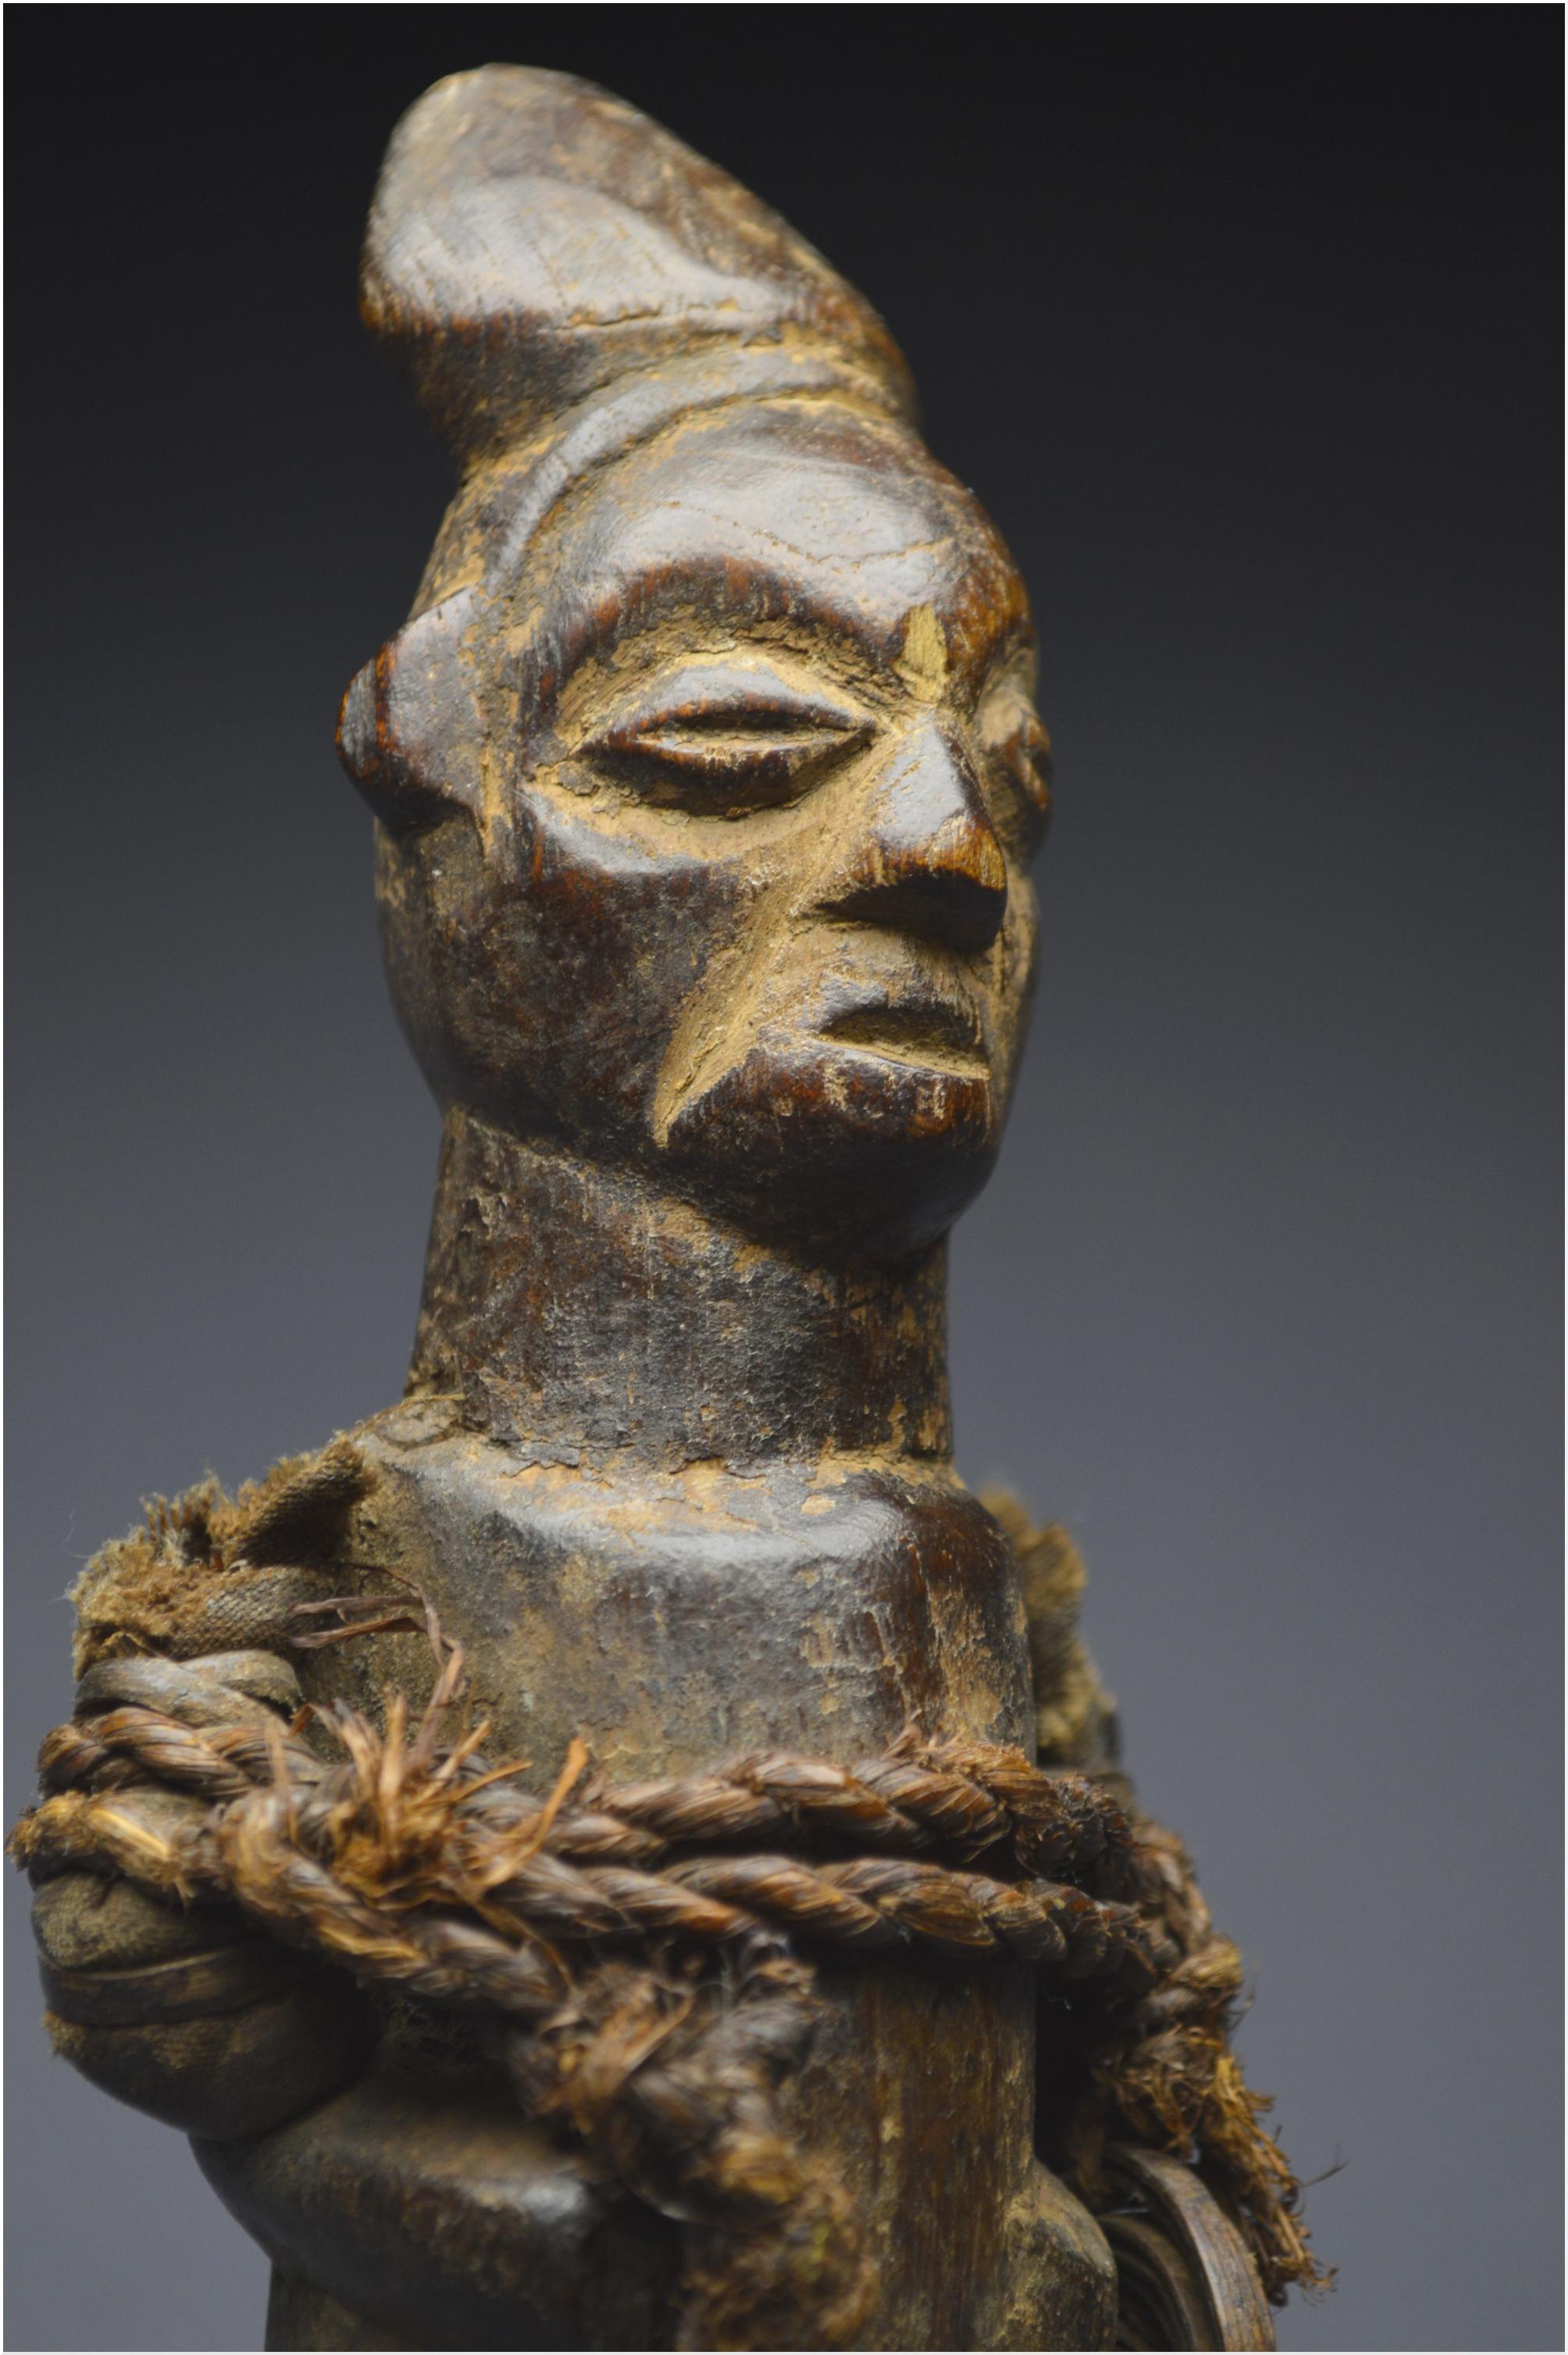 Mid-20th Century, Dem. Rep. Congo, Teke Culture, Ancient Ancestor Fetish 2